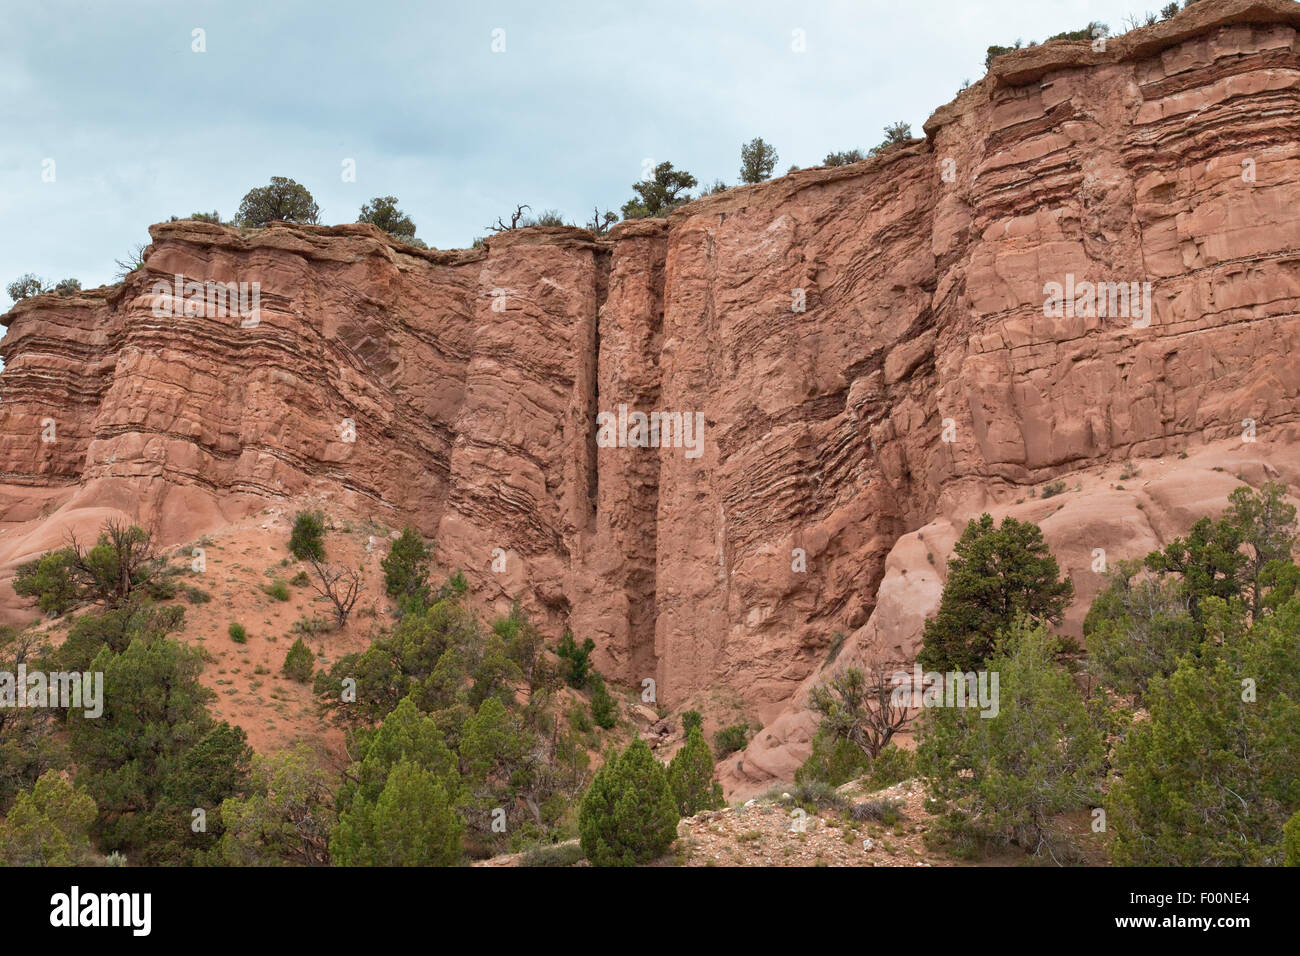 Ausgesetzt Schichten zeigen Breccia Rohre - Colorado-Plateau, einer erhobenen Region, die viel des Bereichs vier Ecken von Utah bedeckt Stockfoto